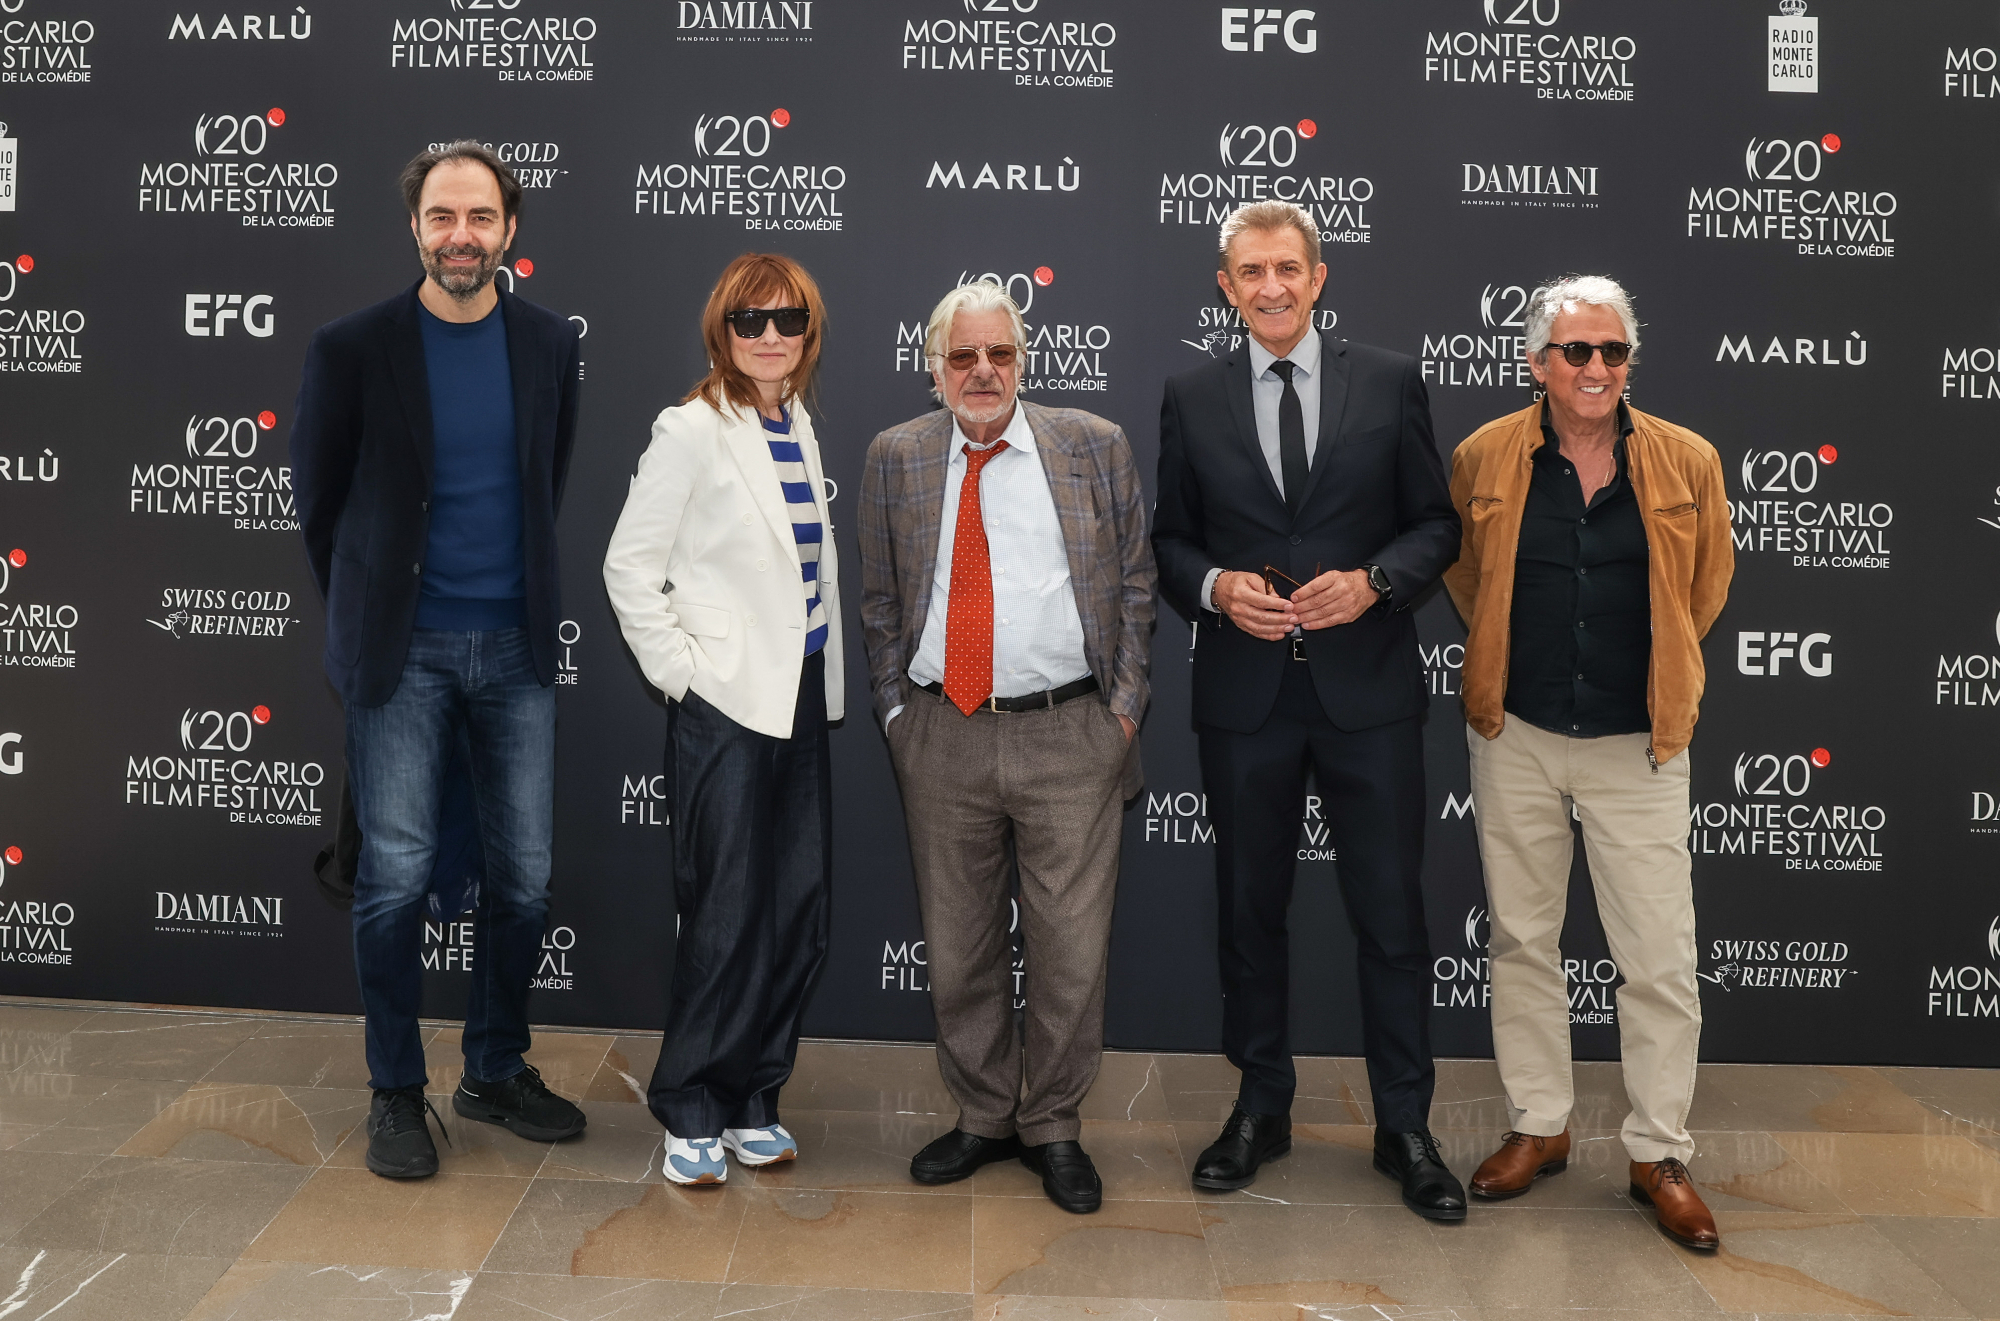 La 20e édition de Monte-Carlo Film Festival de la Comédie. Jury with Ezio Greggio. (c) MCFF MEDIA RELATIONS Monaco.